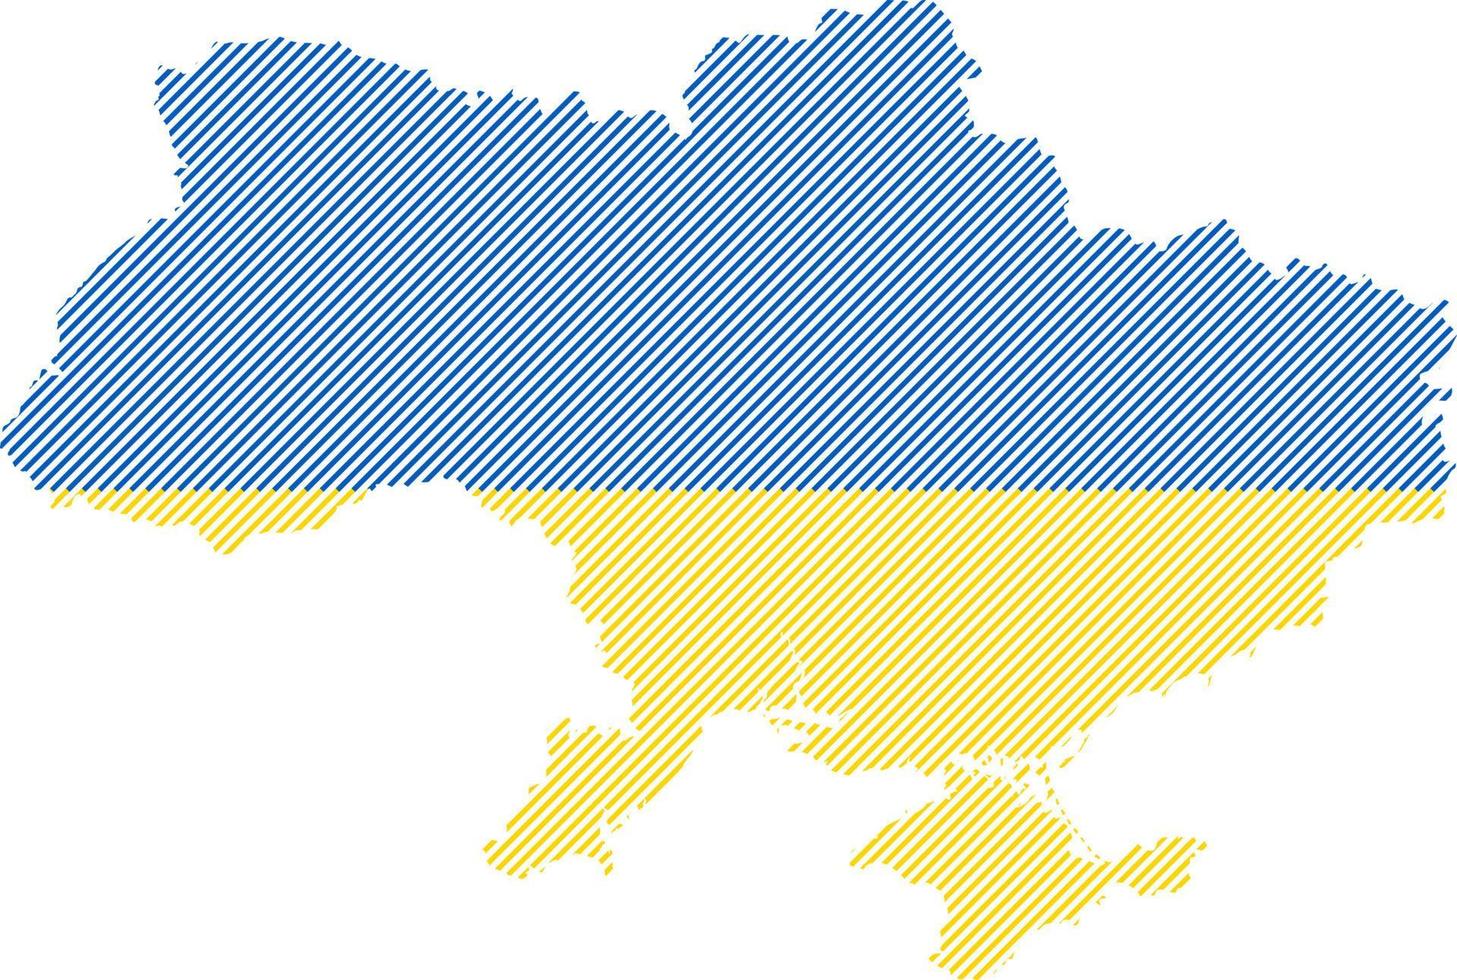 mapa de ucrania con crimea, sombreado con los colores de la bandera ucraniana. vector